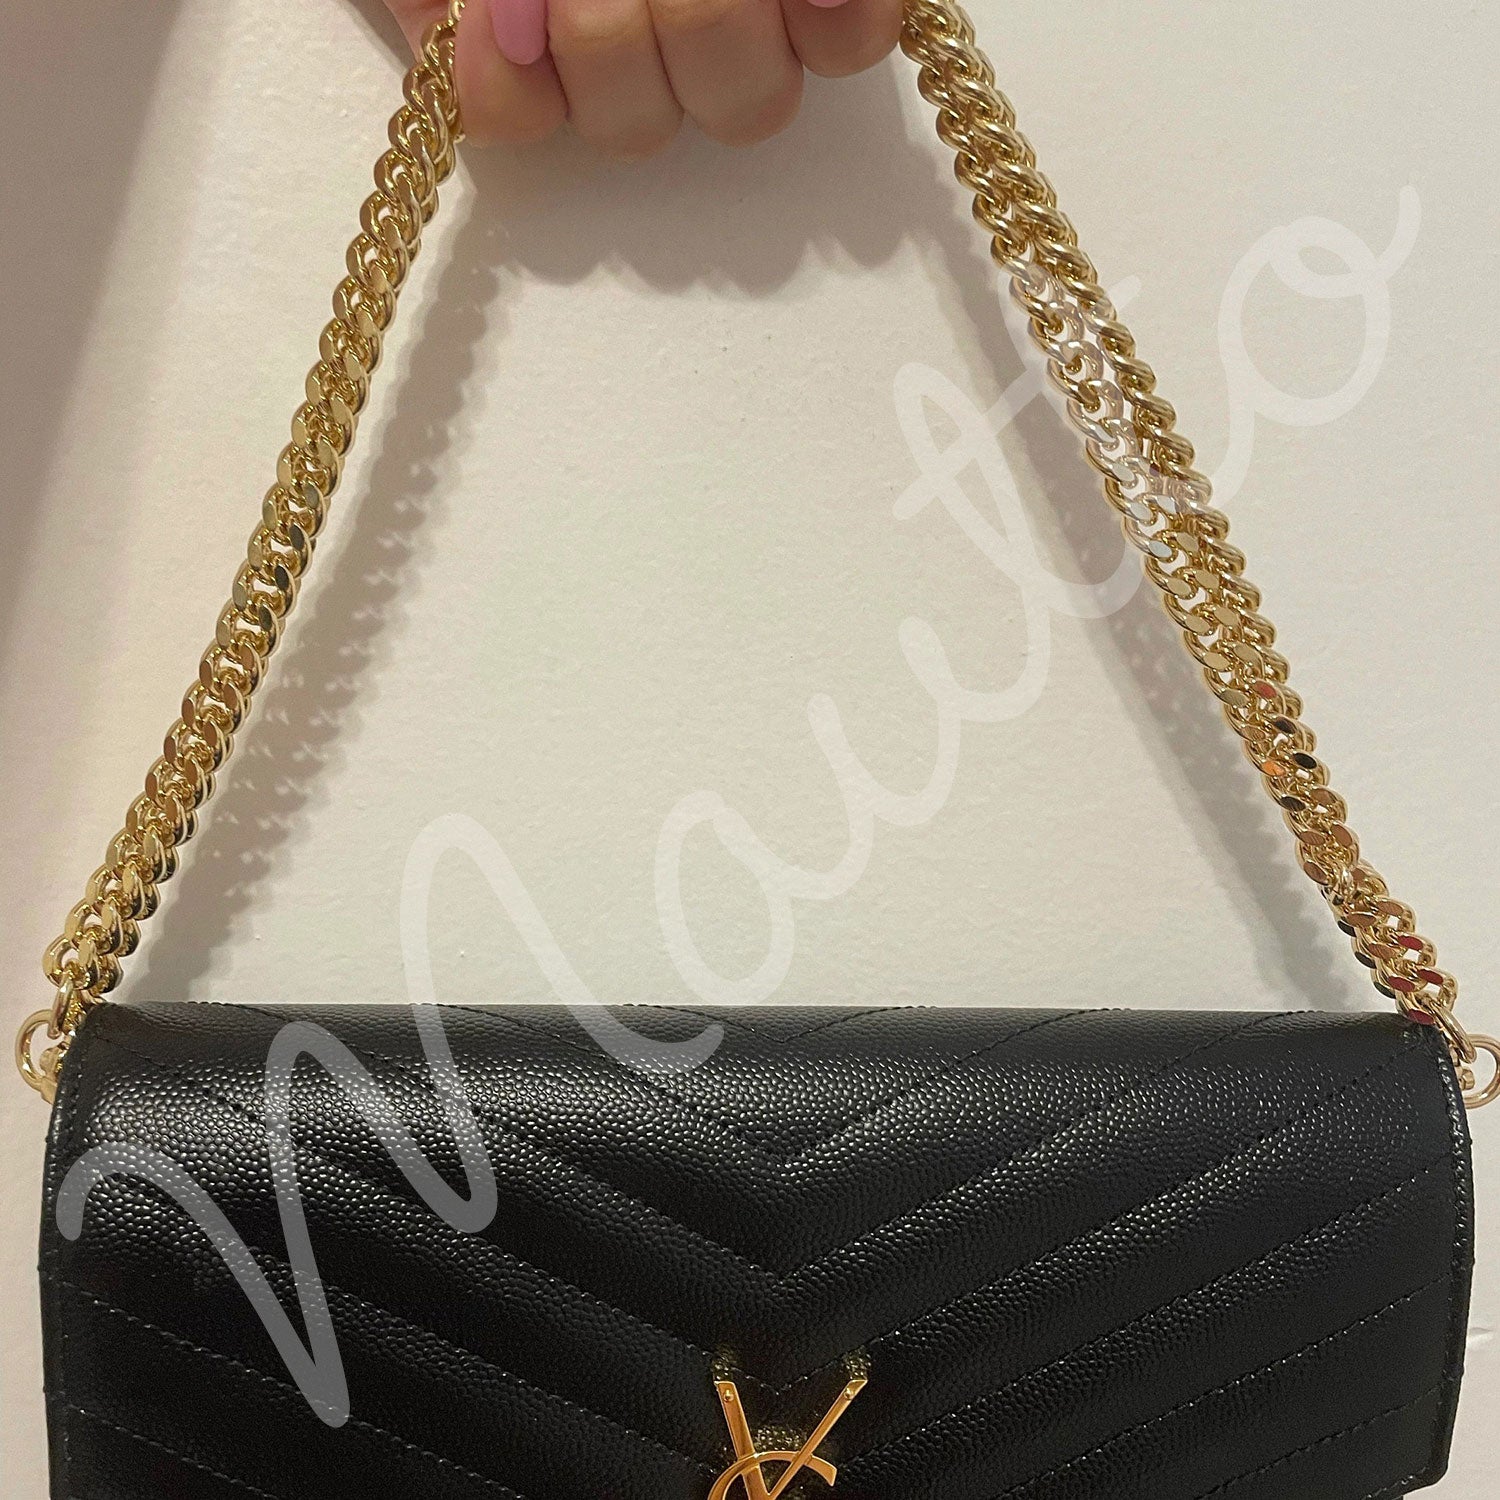 Lst89 Luxury Designer Handbags Handle Gold Chain Strap Genuine